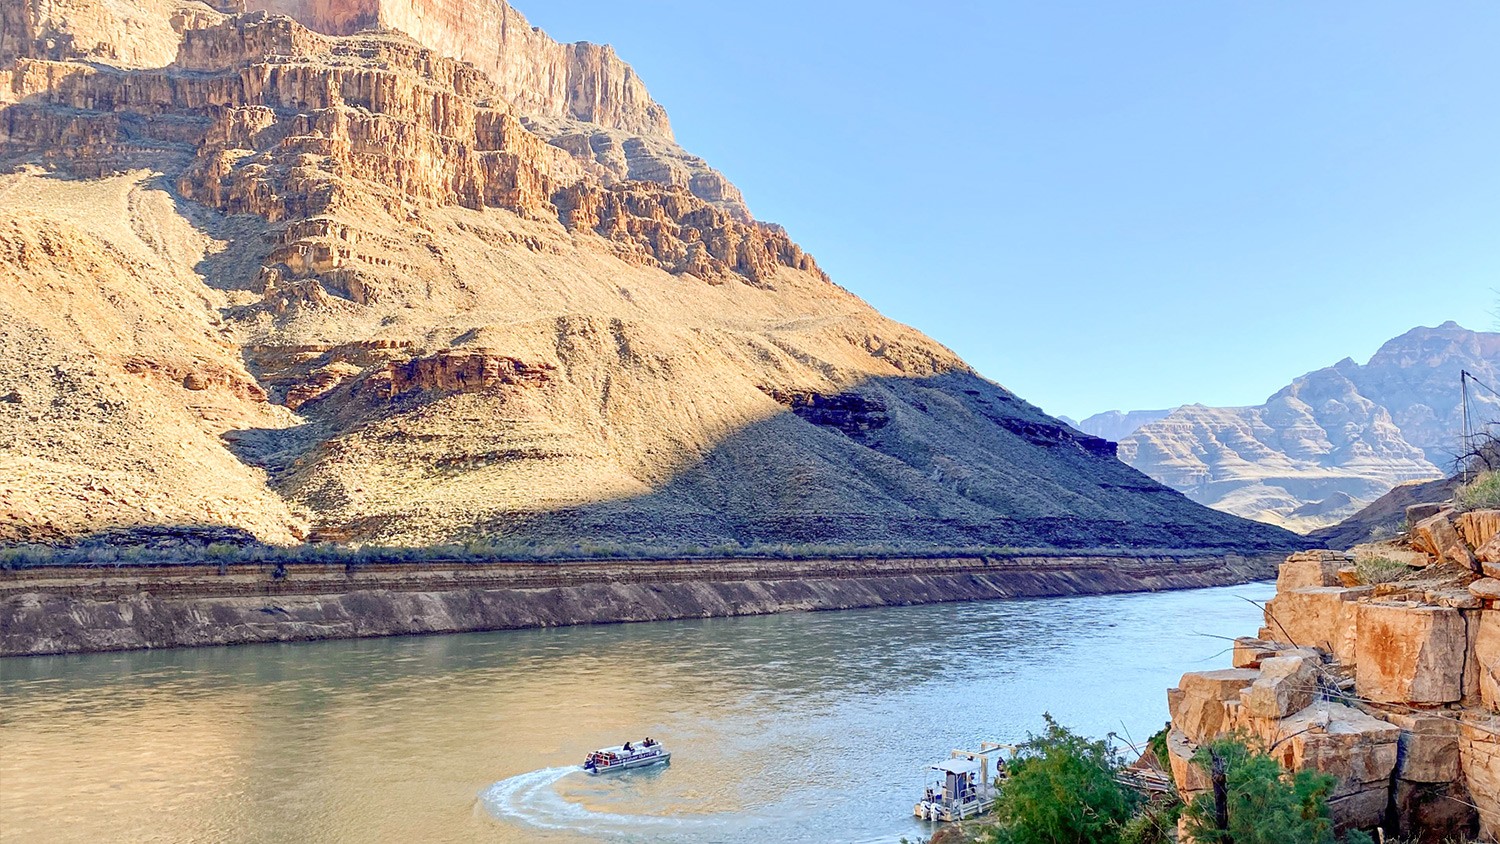 Ecco come ottenere la vista più grandiosa del Grand Canyon 